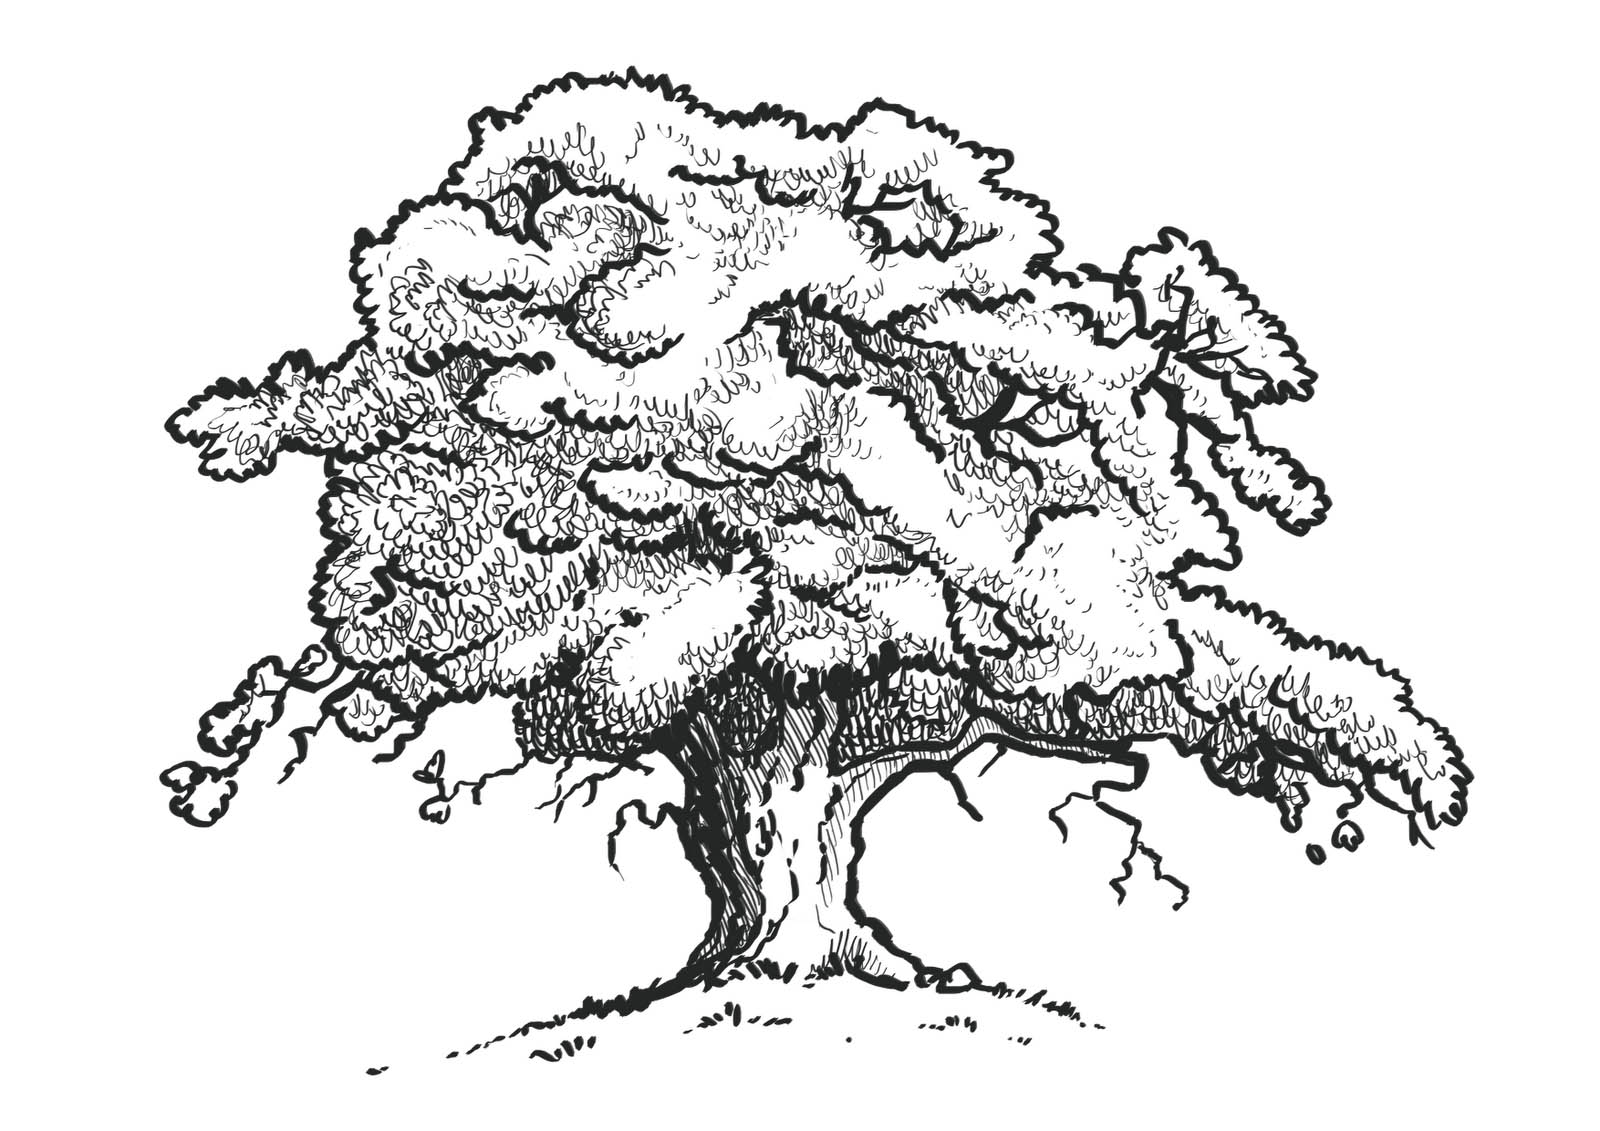 Sprawling oak